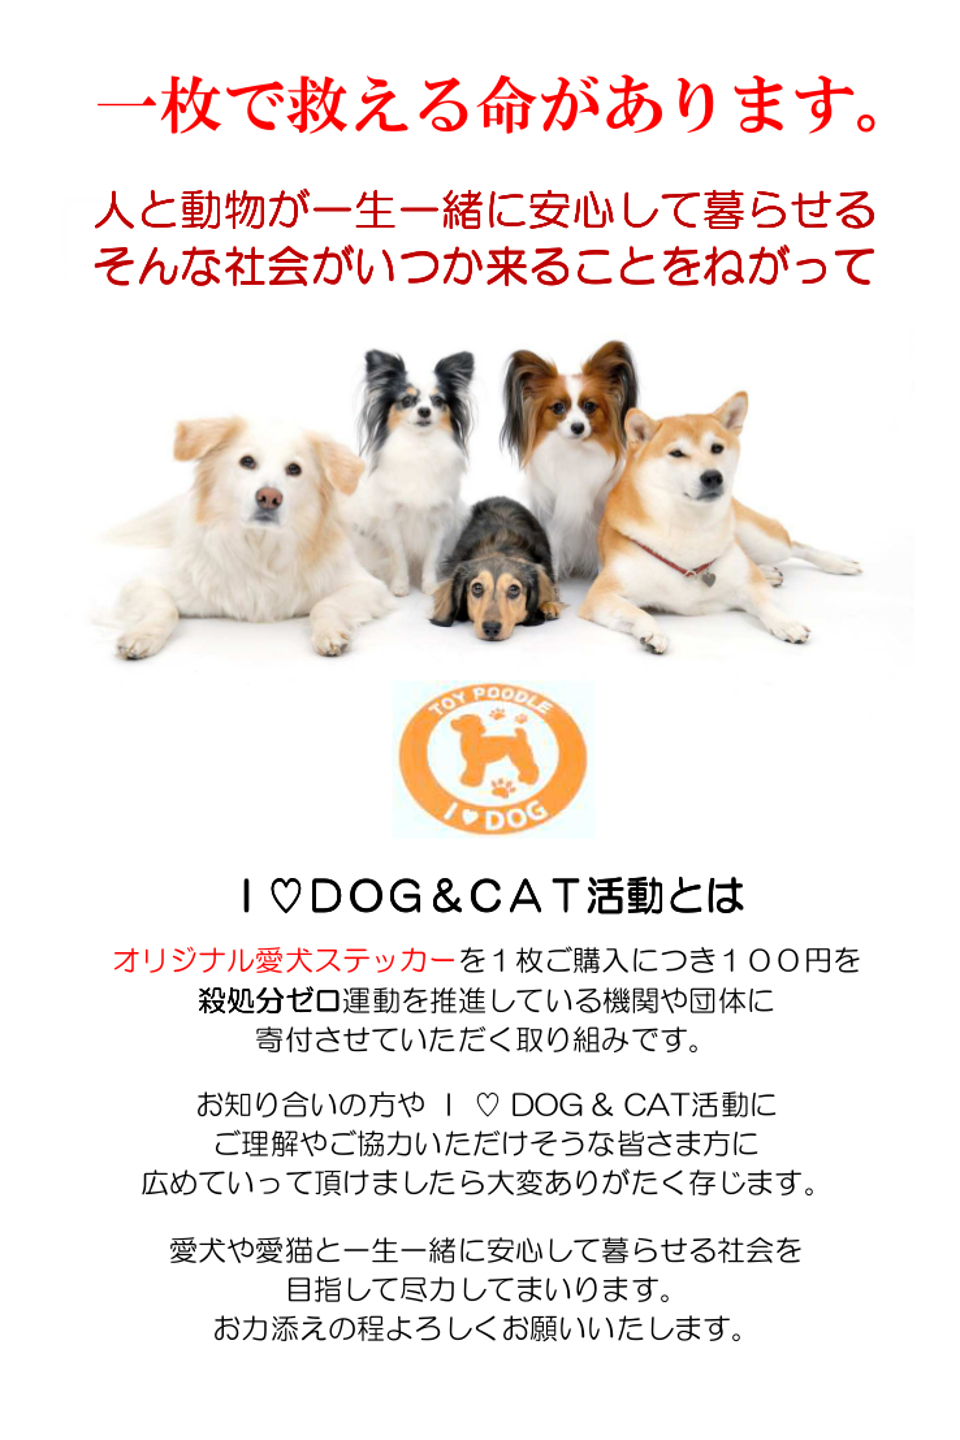 Ｉ ♡ DOG & CAT活動とは、オリジナル愛犬ステッカーを１枚ご購入につき１００円を殺処分ゼロ運動を推進している機関や団体に寄付させていただく取り組みです。愛犬や愛猫と一生一緒に安心して暮らせる社会を目指して尽力してまいります。